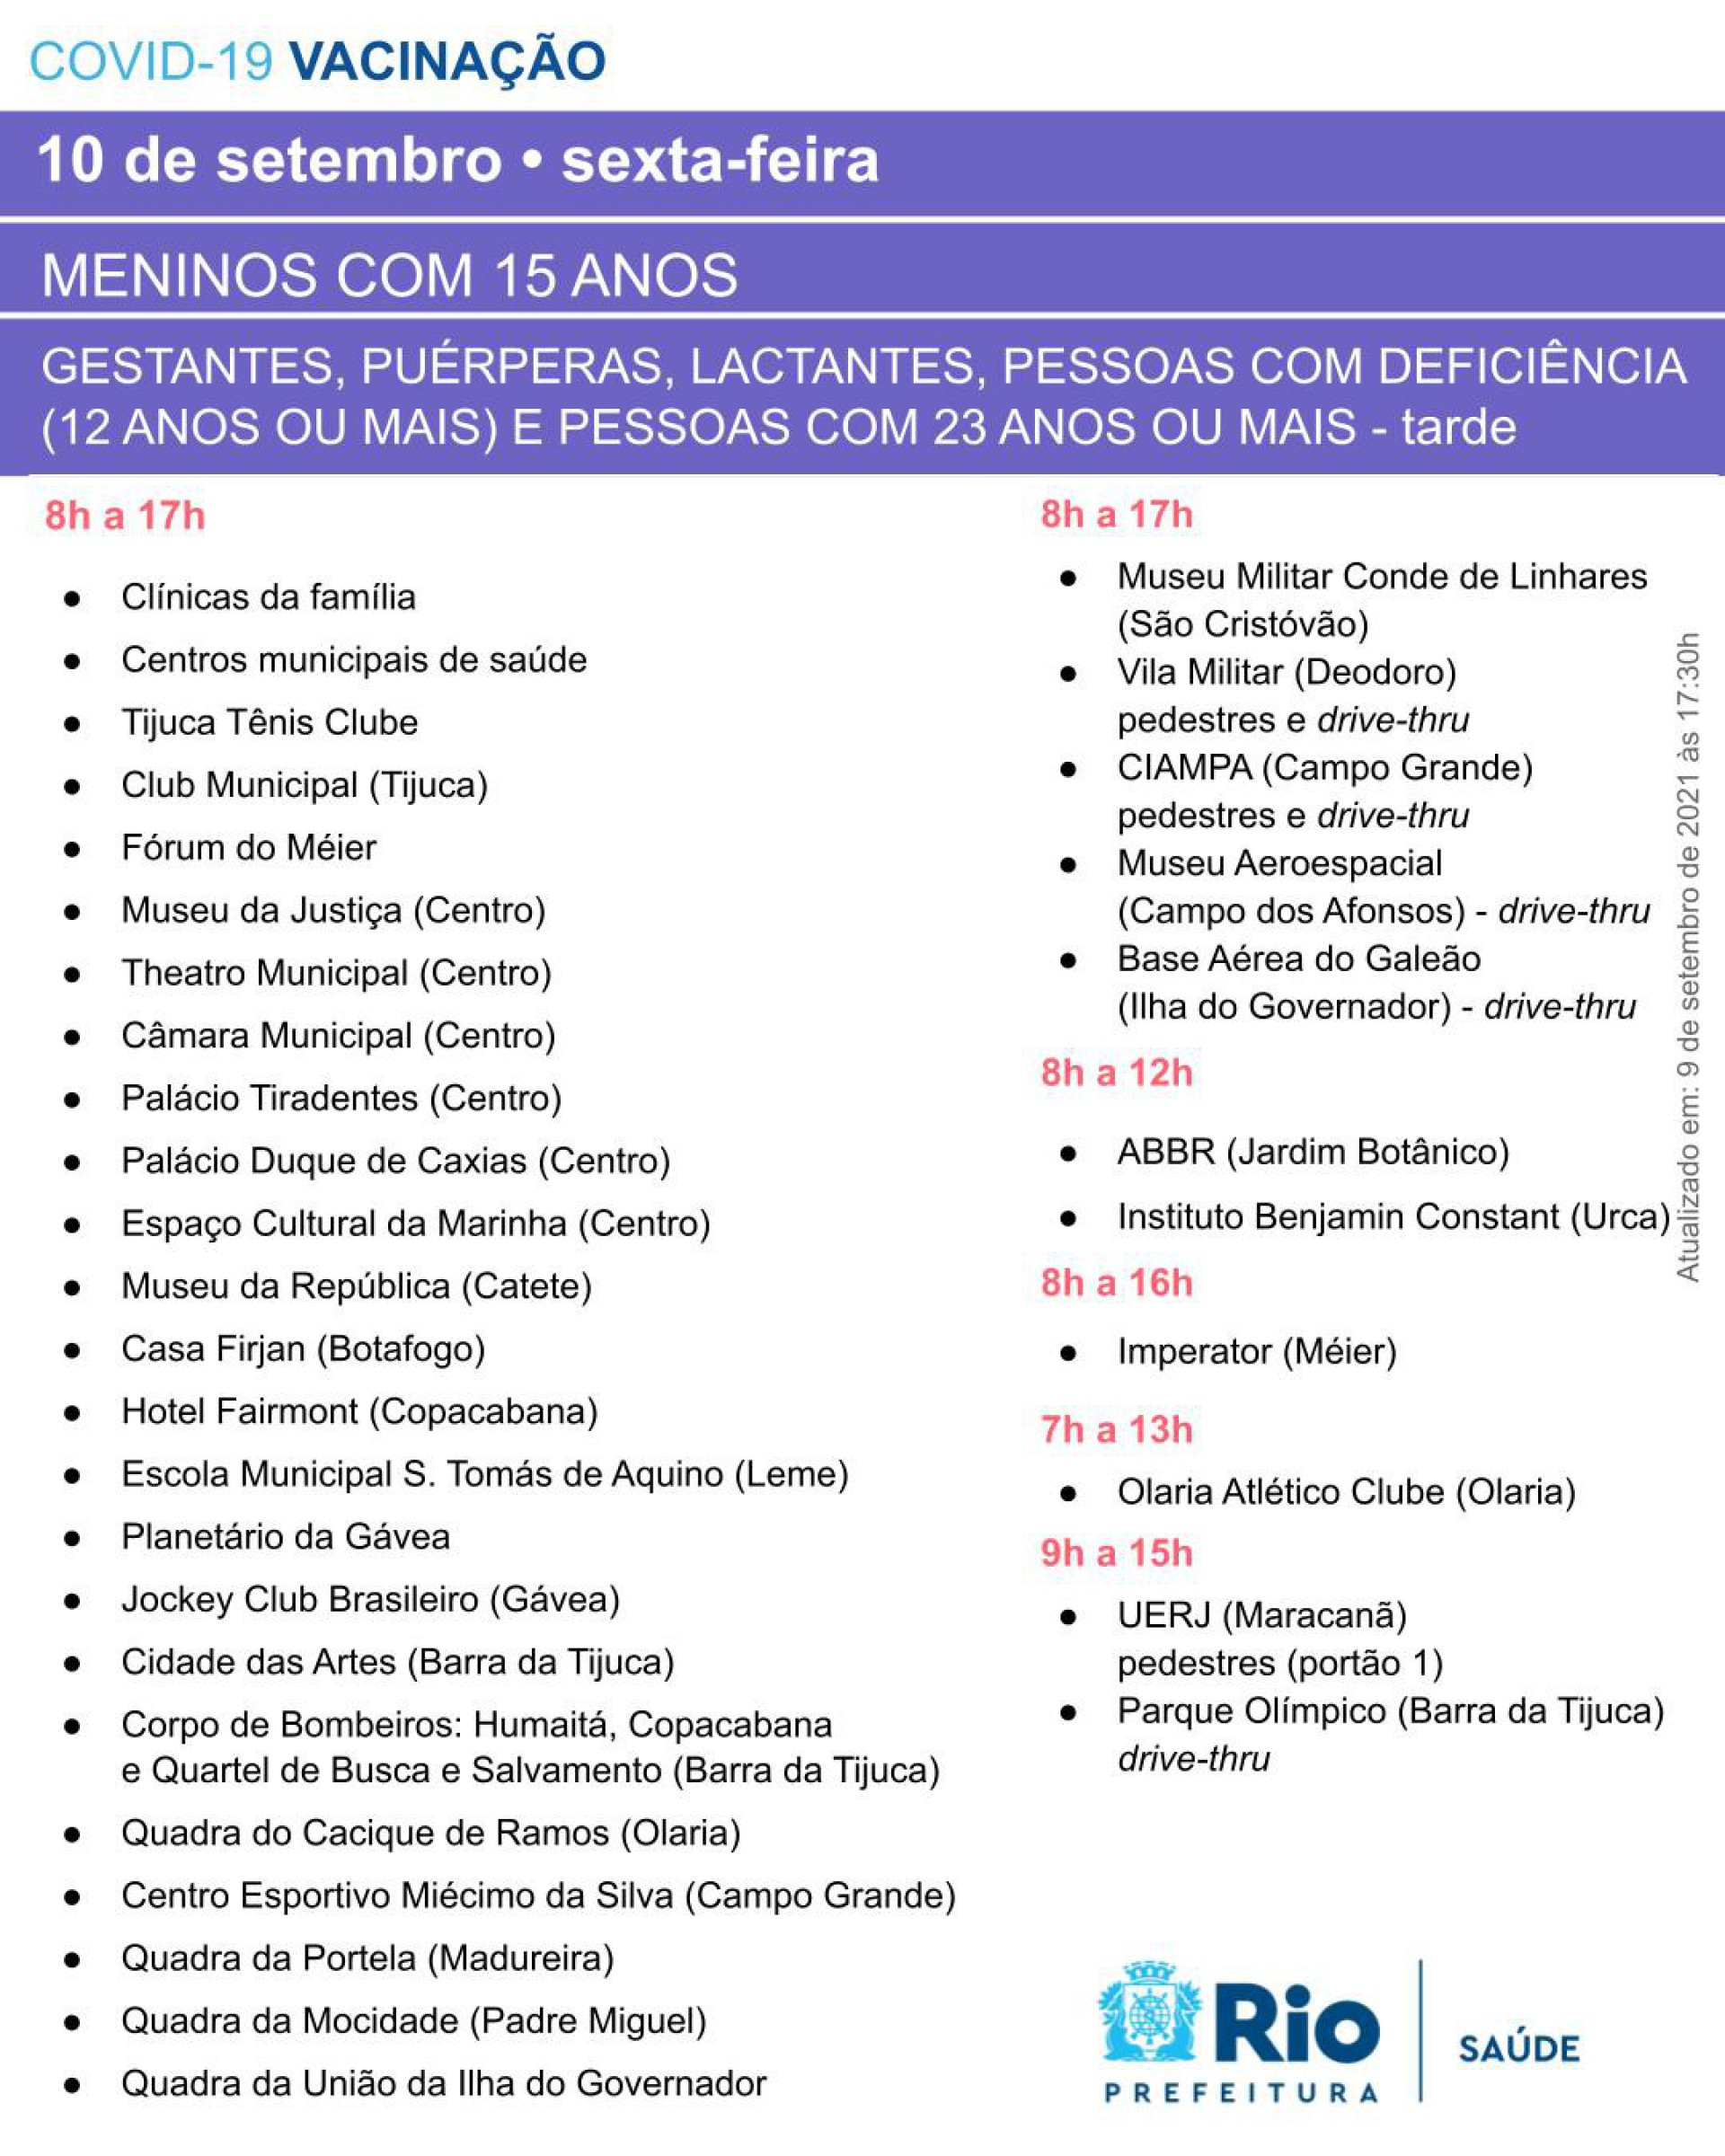 Postos de vacinação do Rio - Divulgação/Prefeitura do Rio